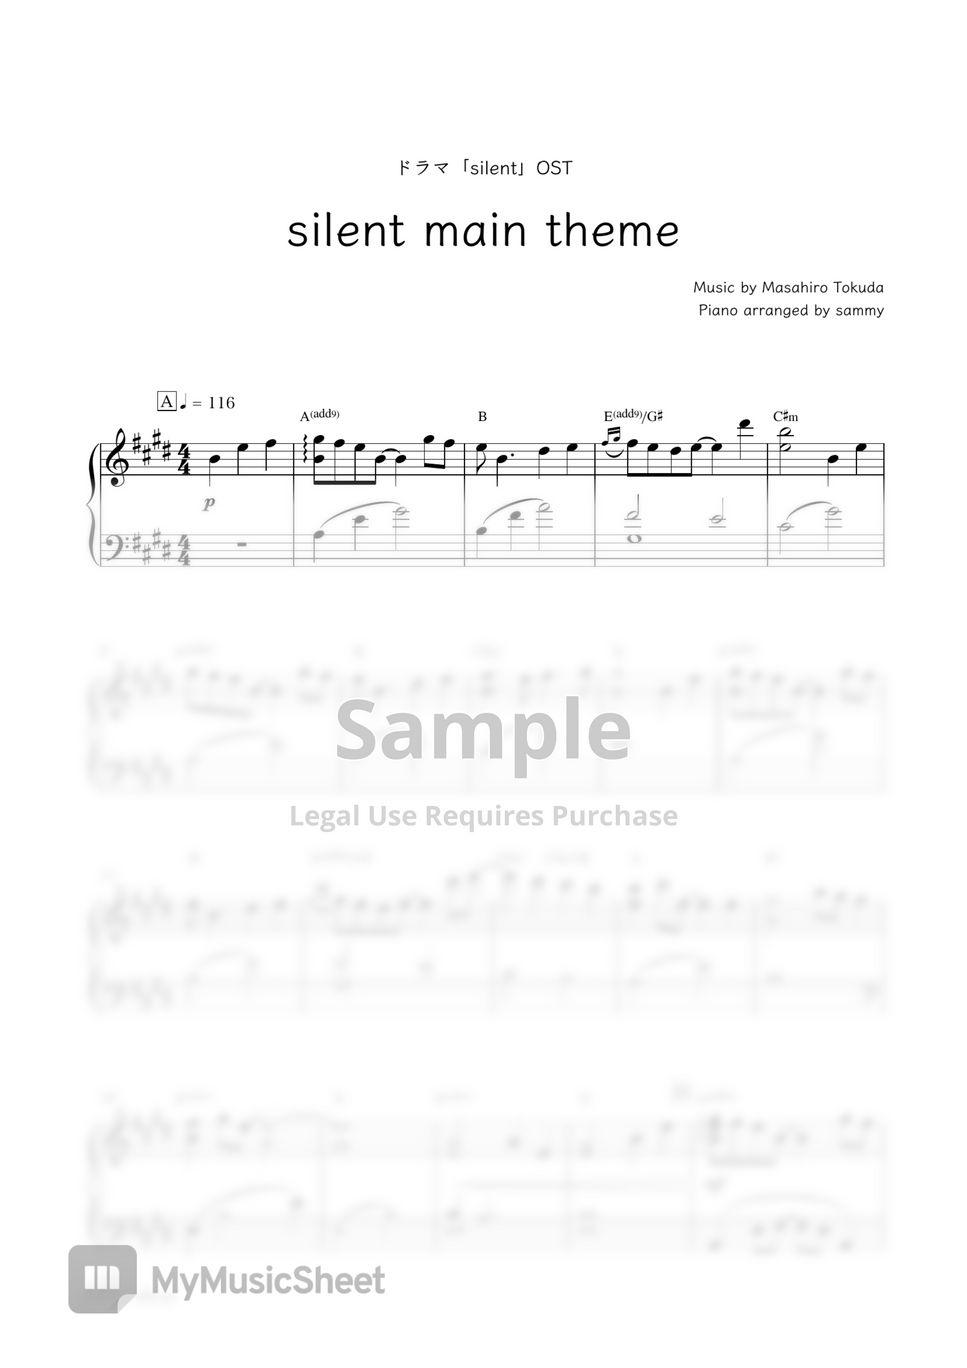 日剧《静雪 (silent) 》OST - silent main theme by sammy